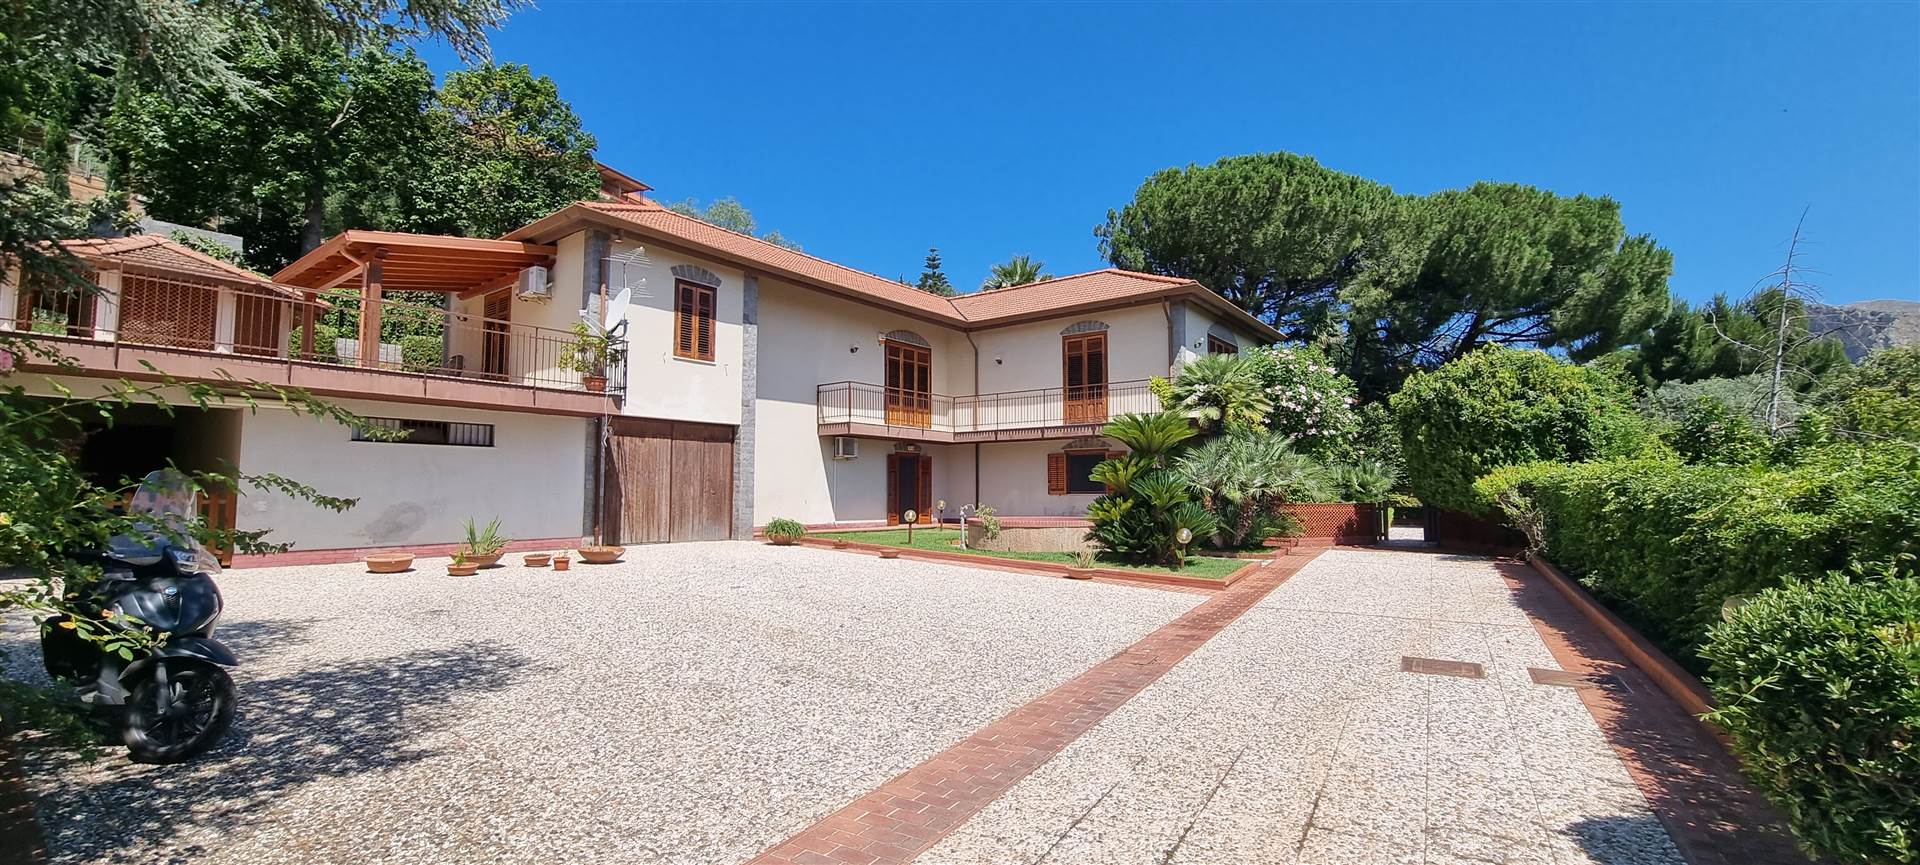 Villa in vendita a Palermo, 10 locali, zona Località: VIALE REGIONE SICILIANA - VIA EVANGELISTA DI BLASI, prezzo € 900.000 | PortaleAgenzieImmobiliari.it